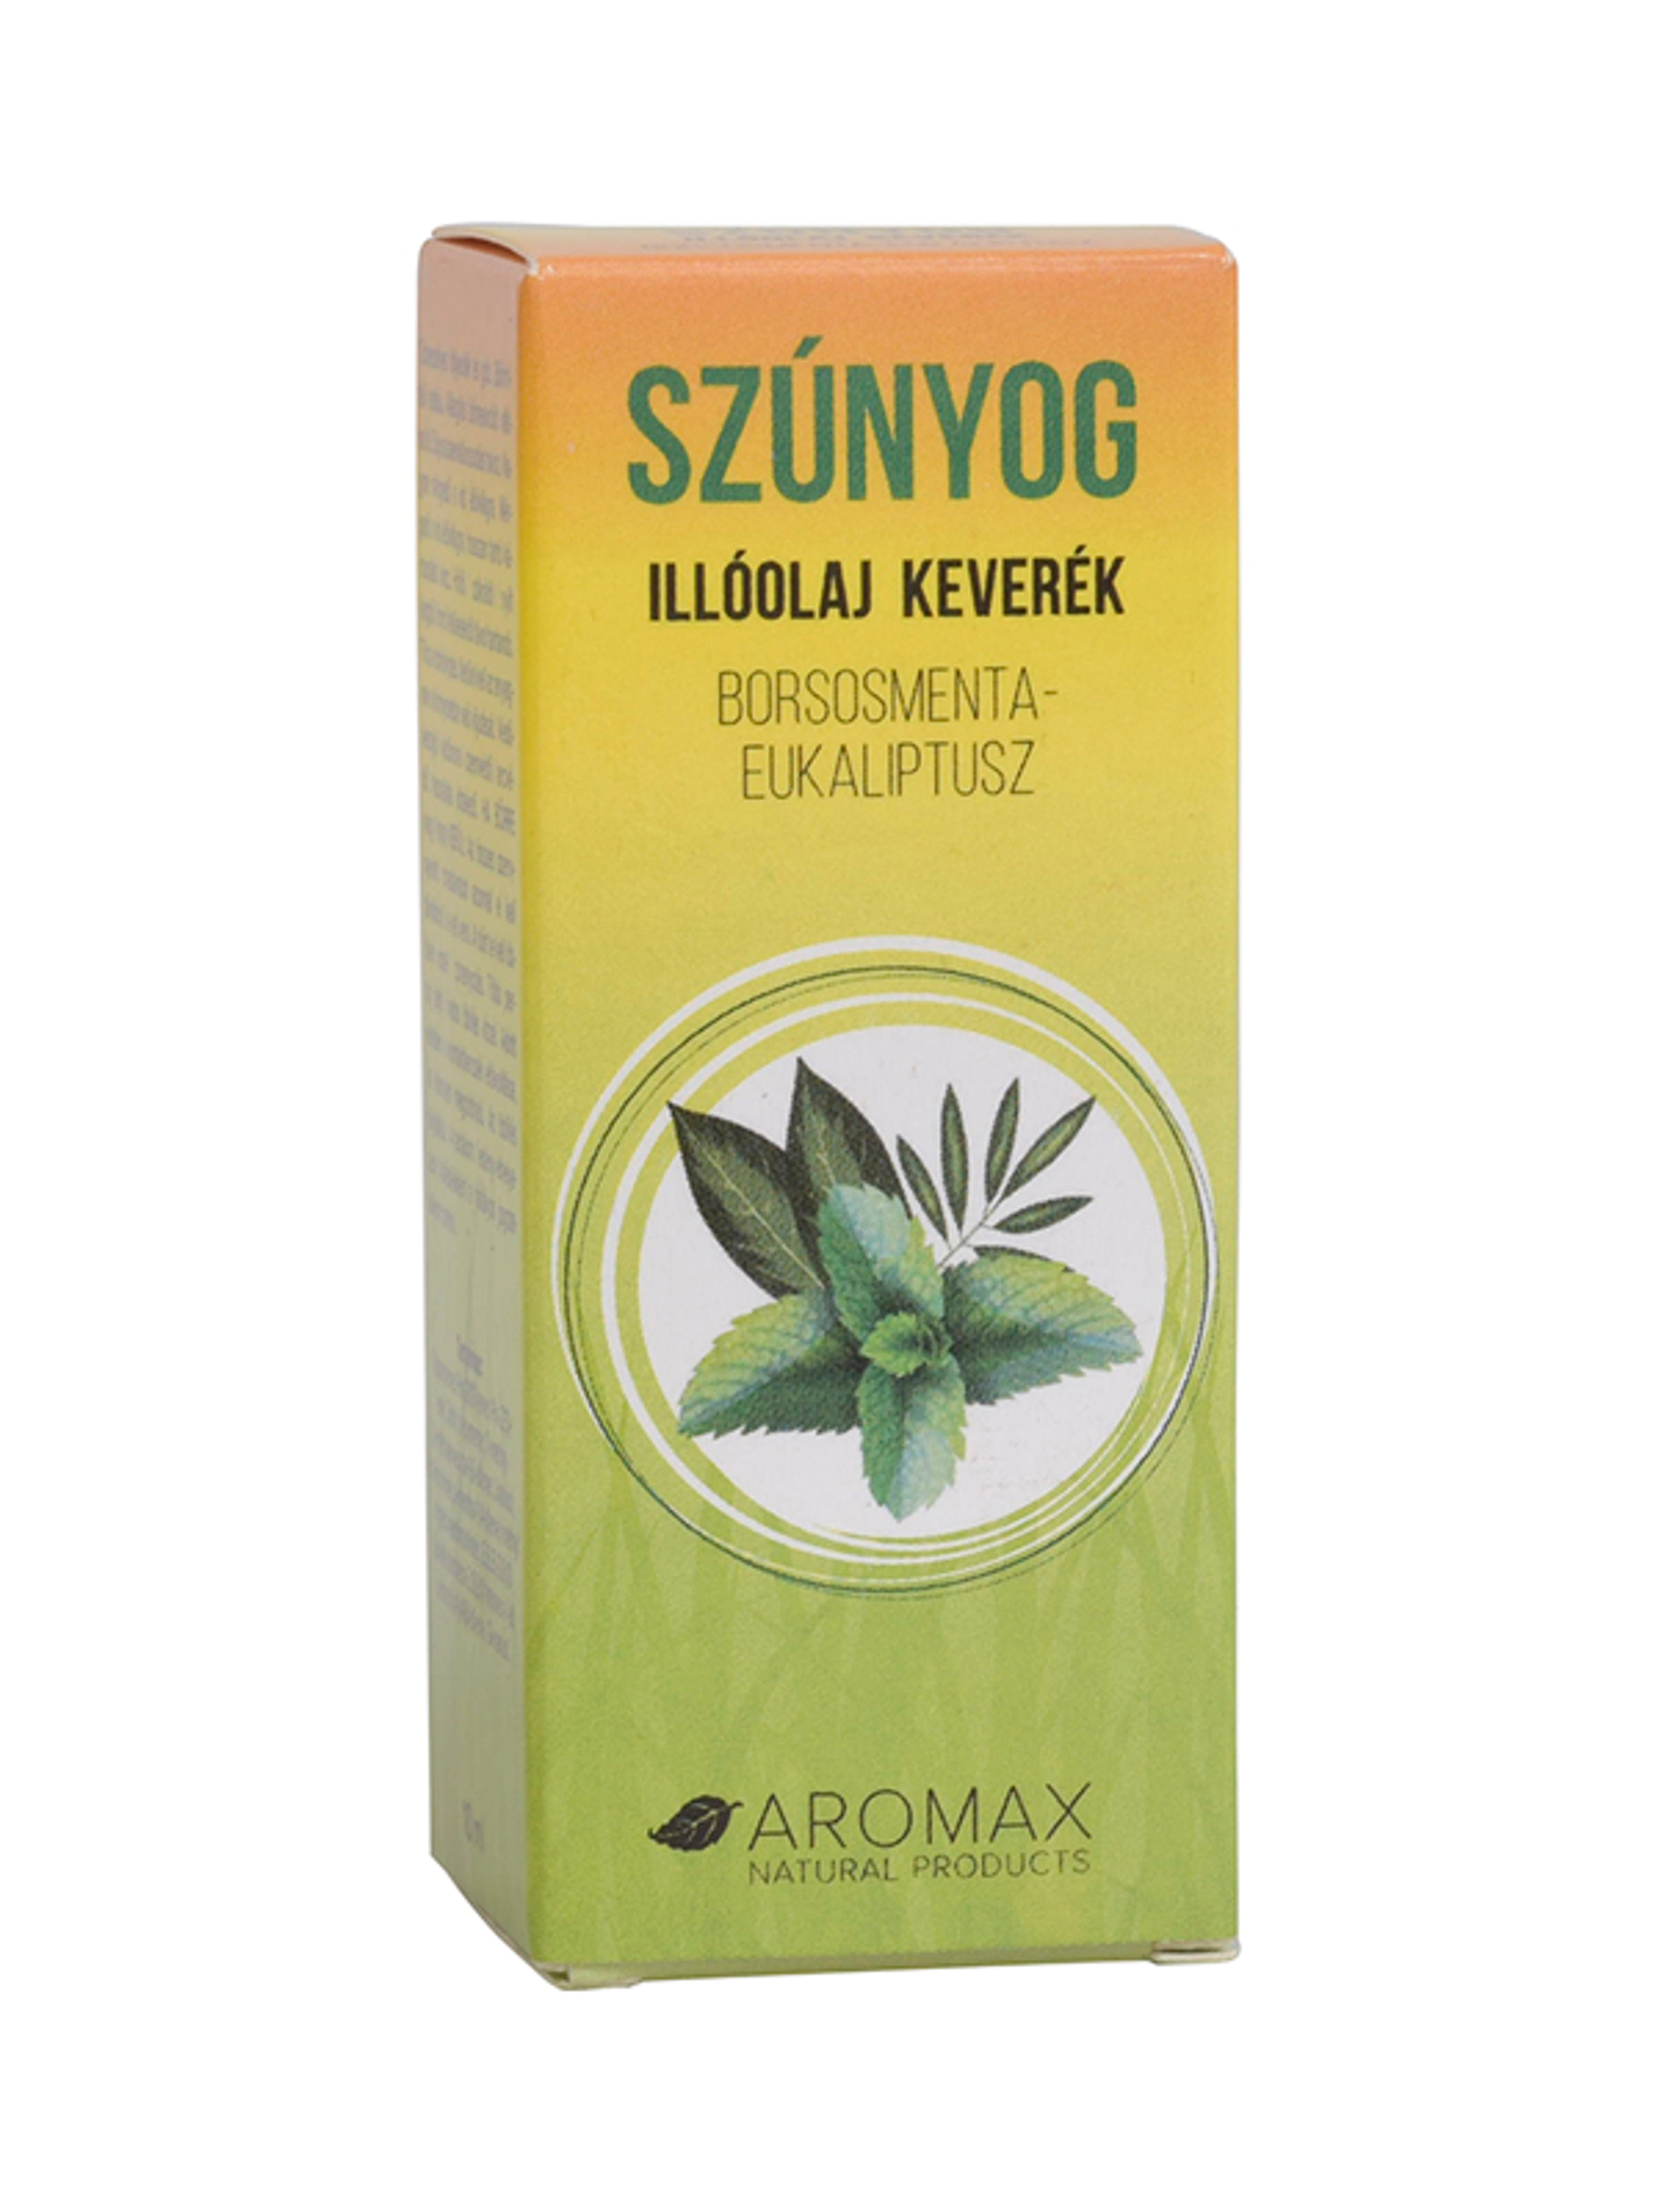 Aromax Borsmenta-Eukaliptusz Szúnyogstop Keverék Illóolaj - 10 ml